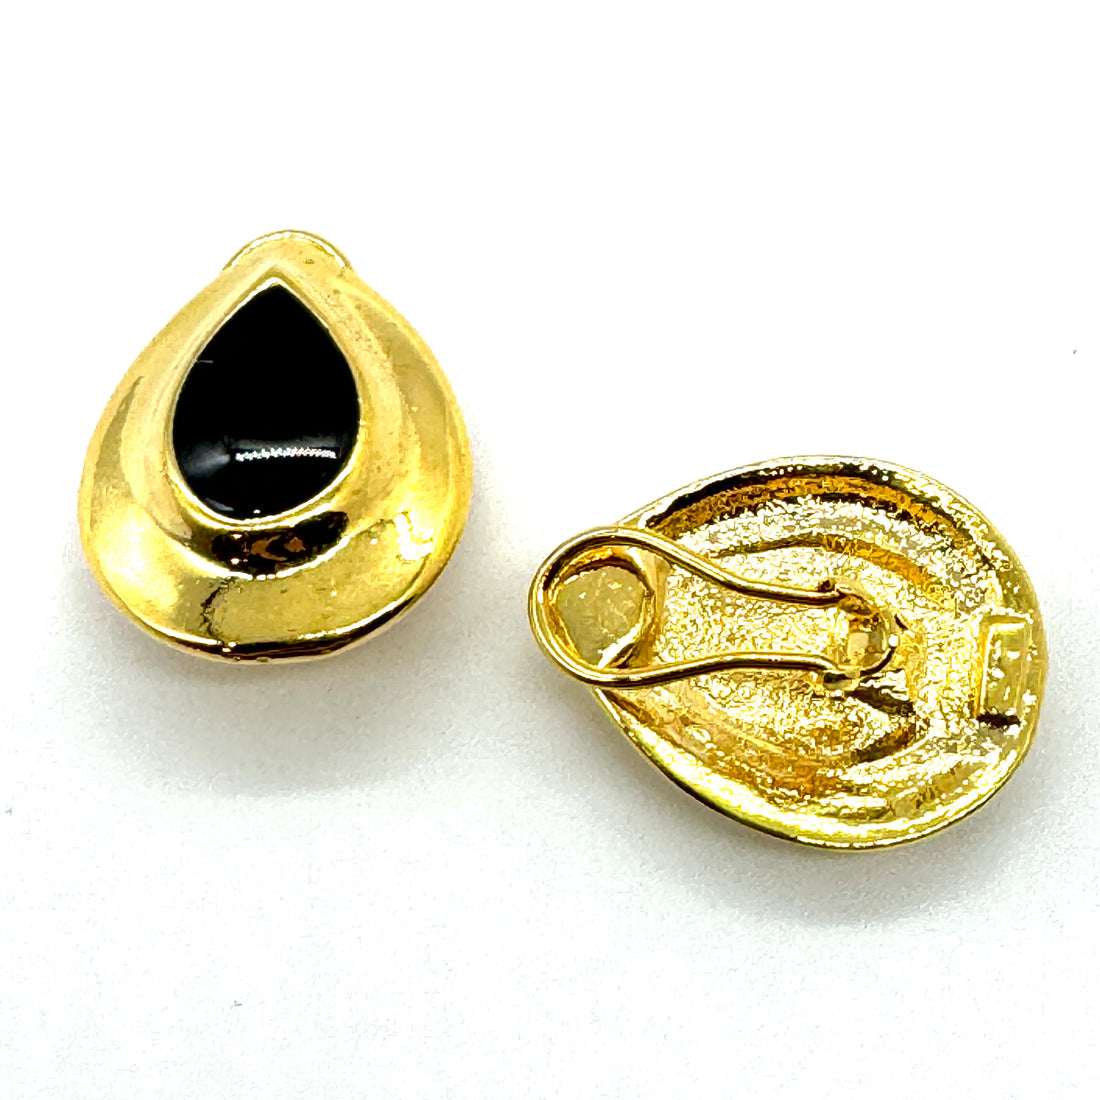 Black &amp; Gold Tear Clip On Stud Earrings - Kooky Deadstock Earrings *Final Sale